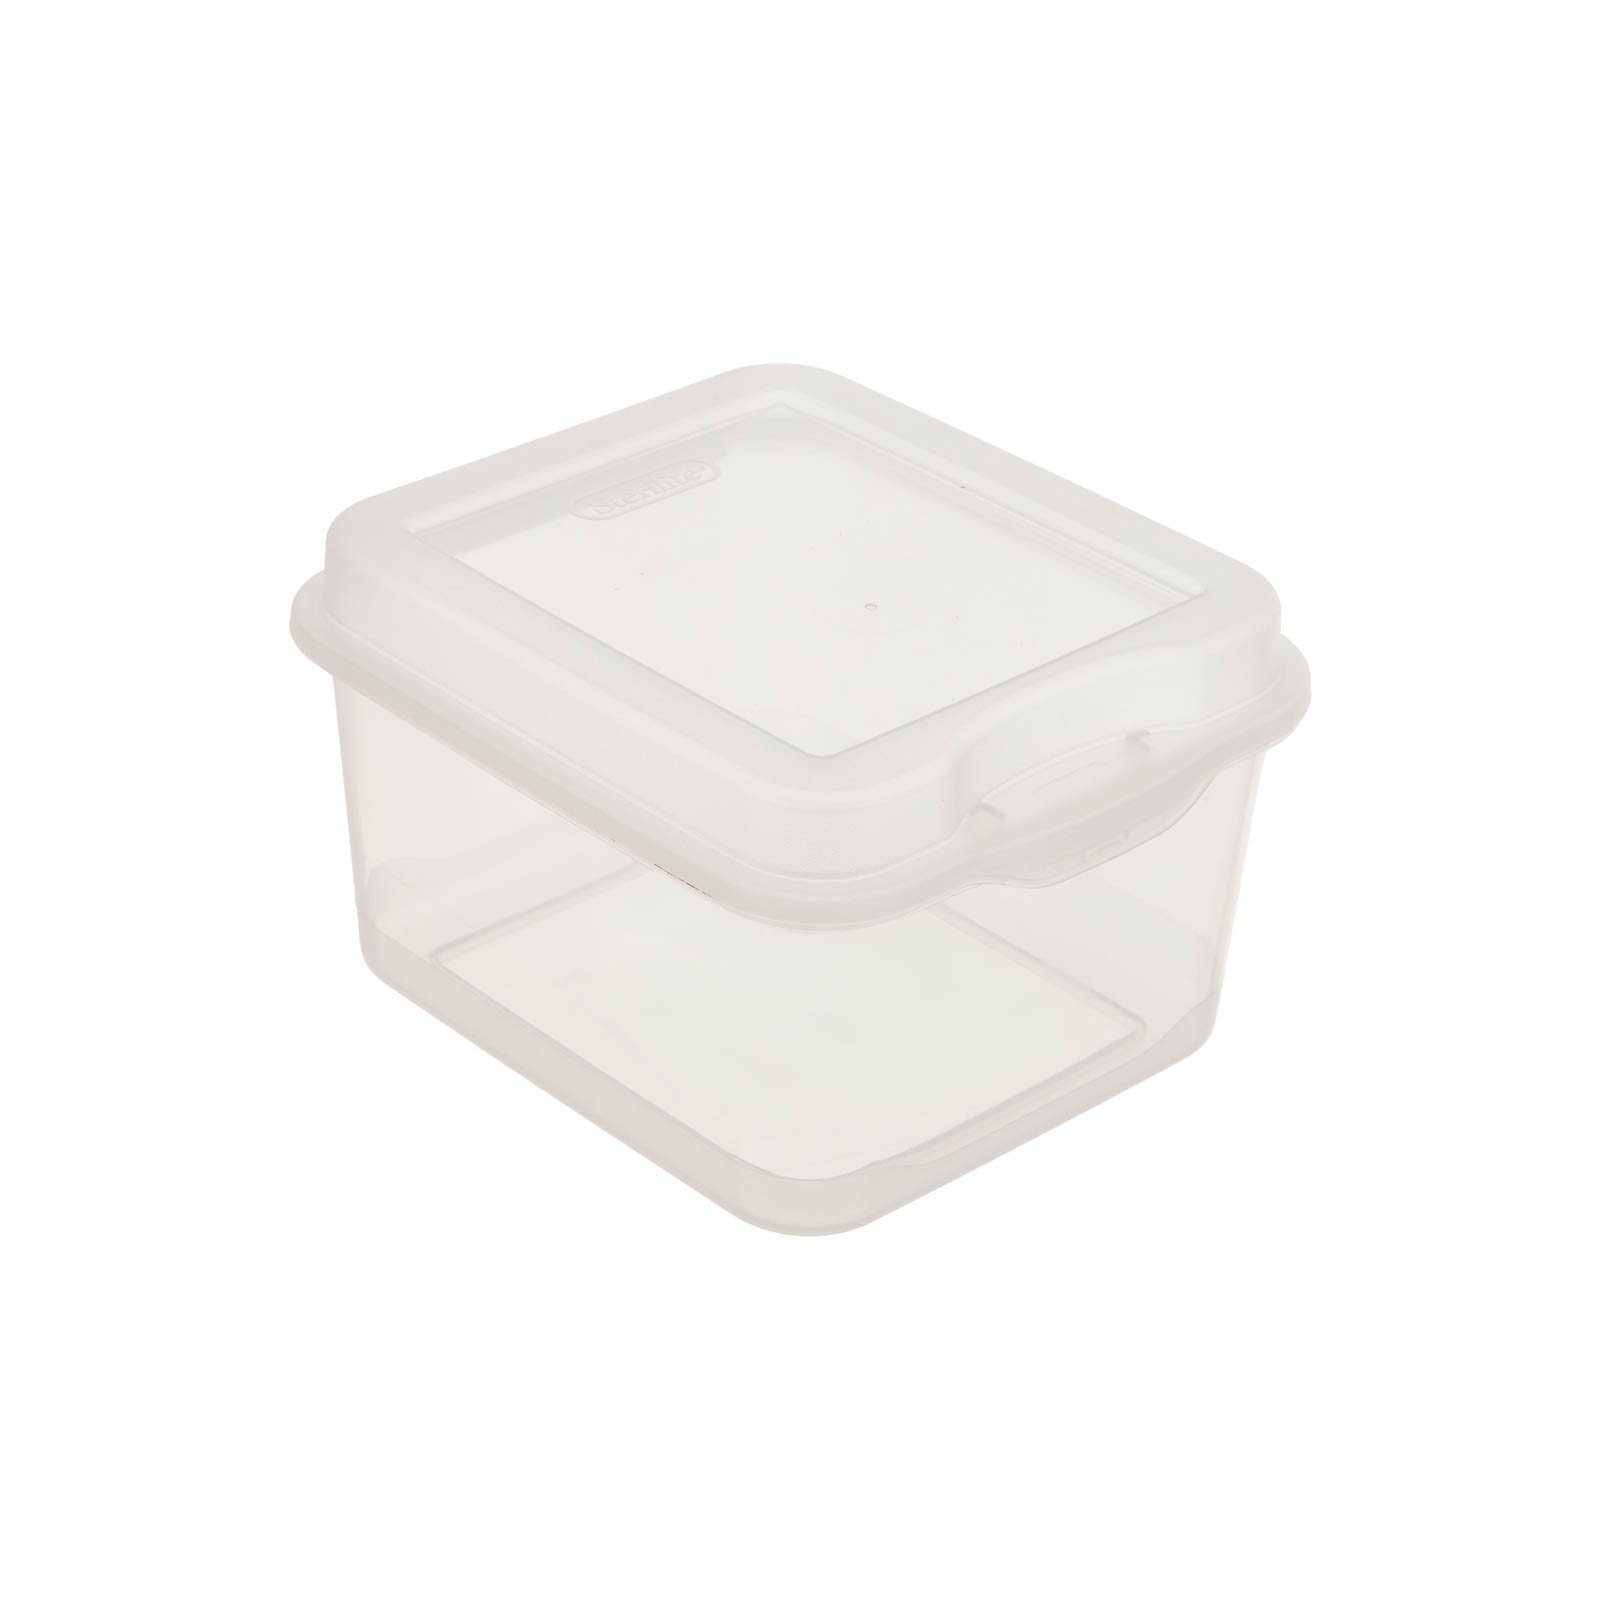 Caja organizadora con tapa Clear Rimax elaborada en plástico.